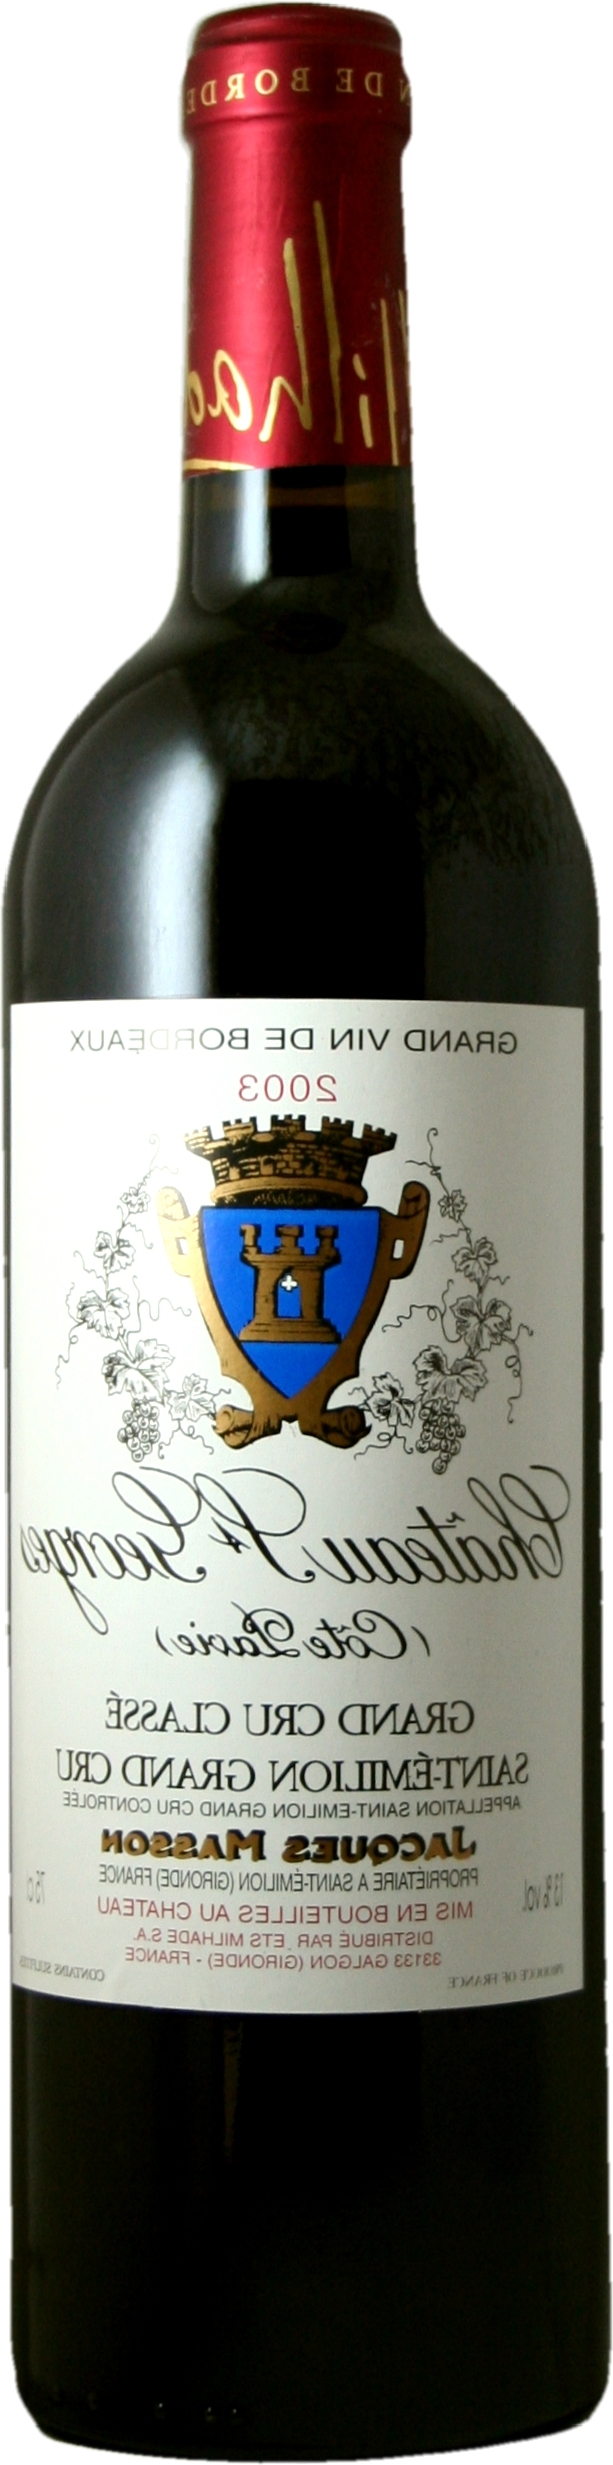 Quand boire un Bordeaux 2012 ?